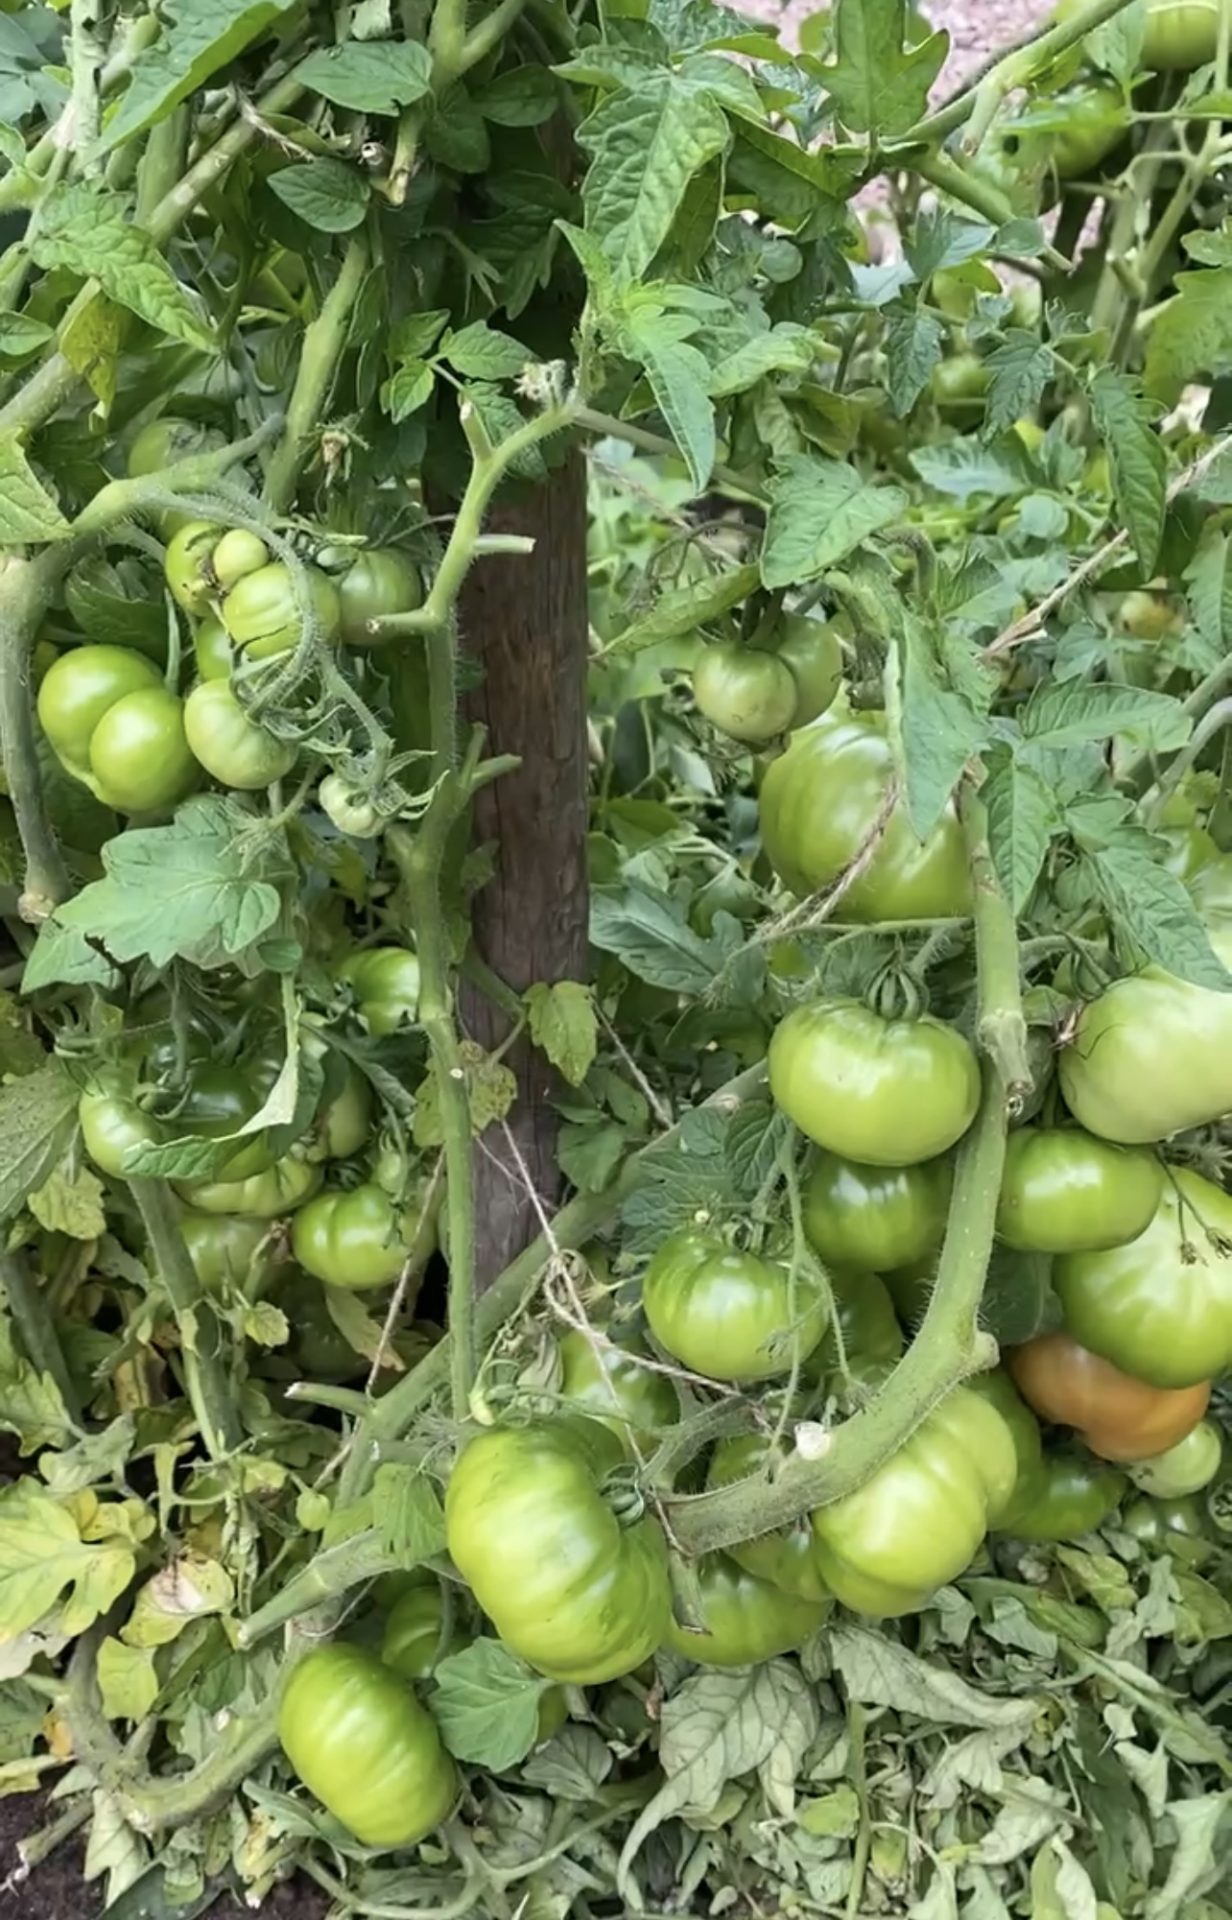 Odla tomater utomhus, allt du behöver veta ifrån sådd till skörd